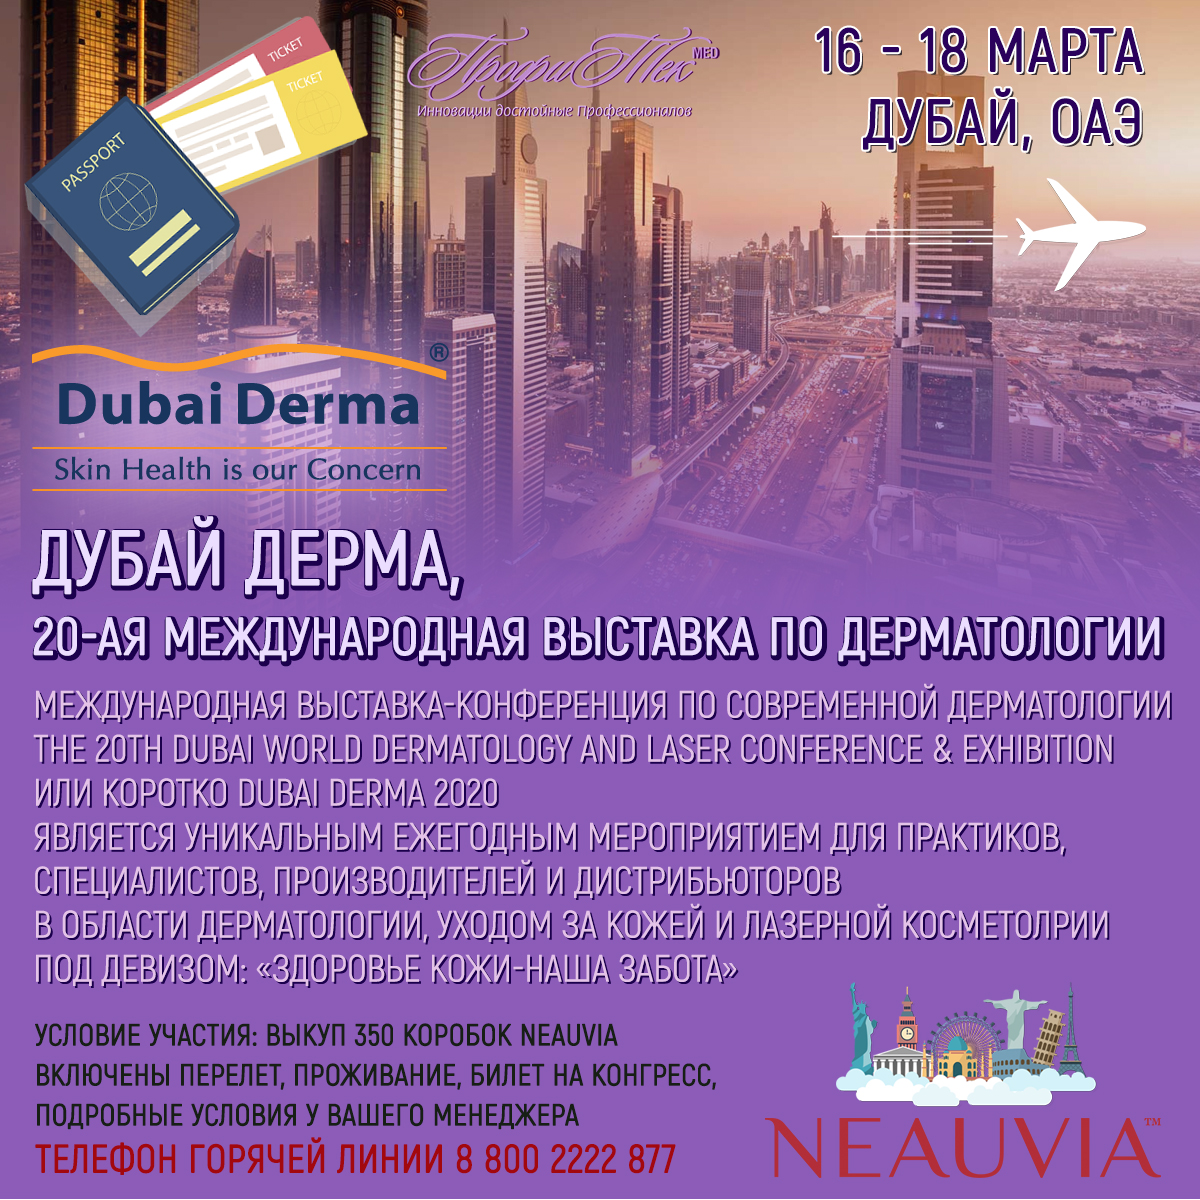 16-18 марта, Дубай, ОАЭ, Дубай Дерма, 20-ая Международная выставка по дерматологии